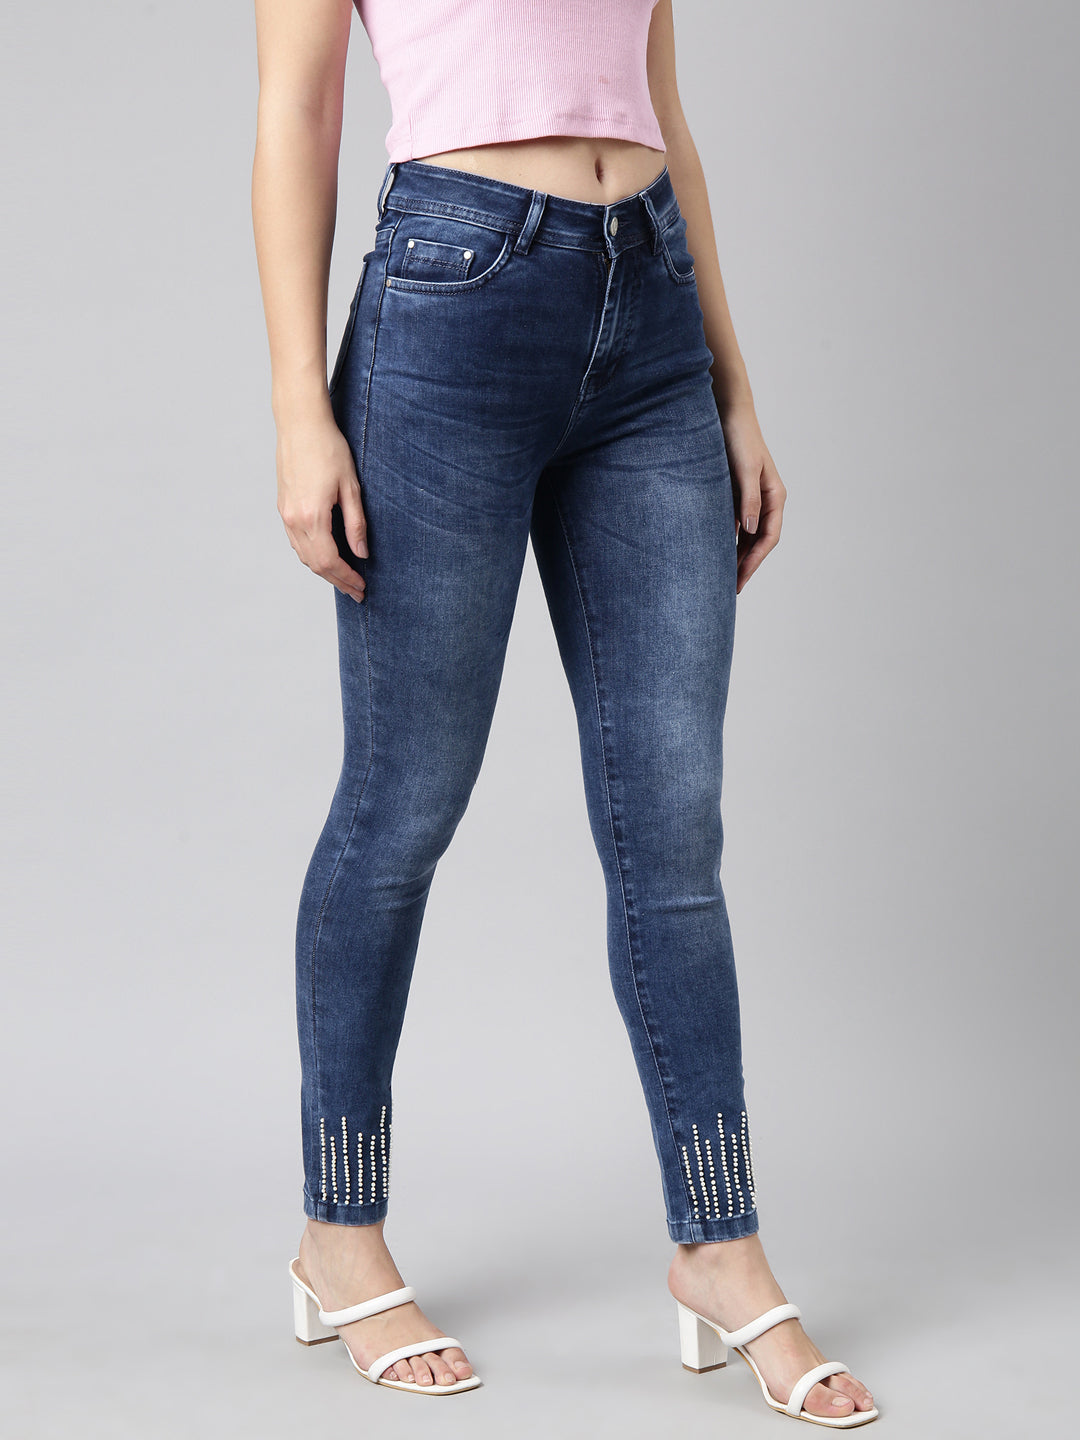 Women Skinny Fit Denim Navy Blue Jean